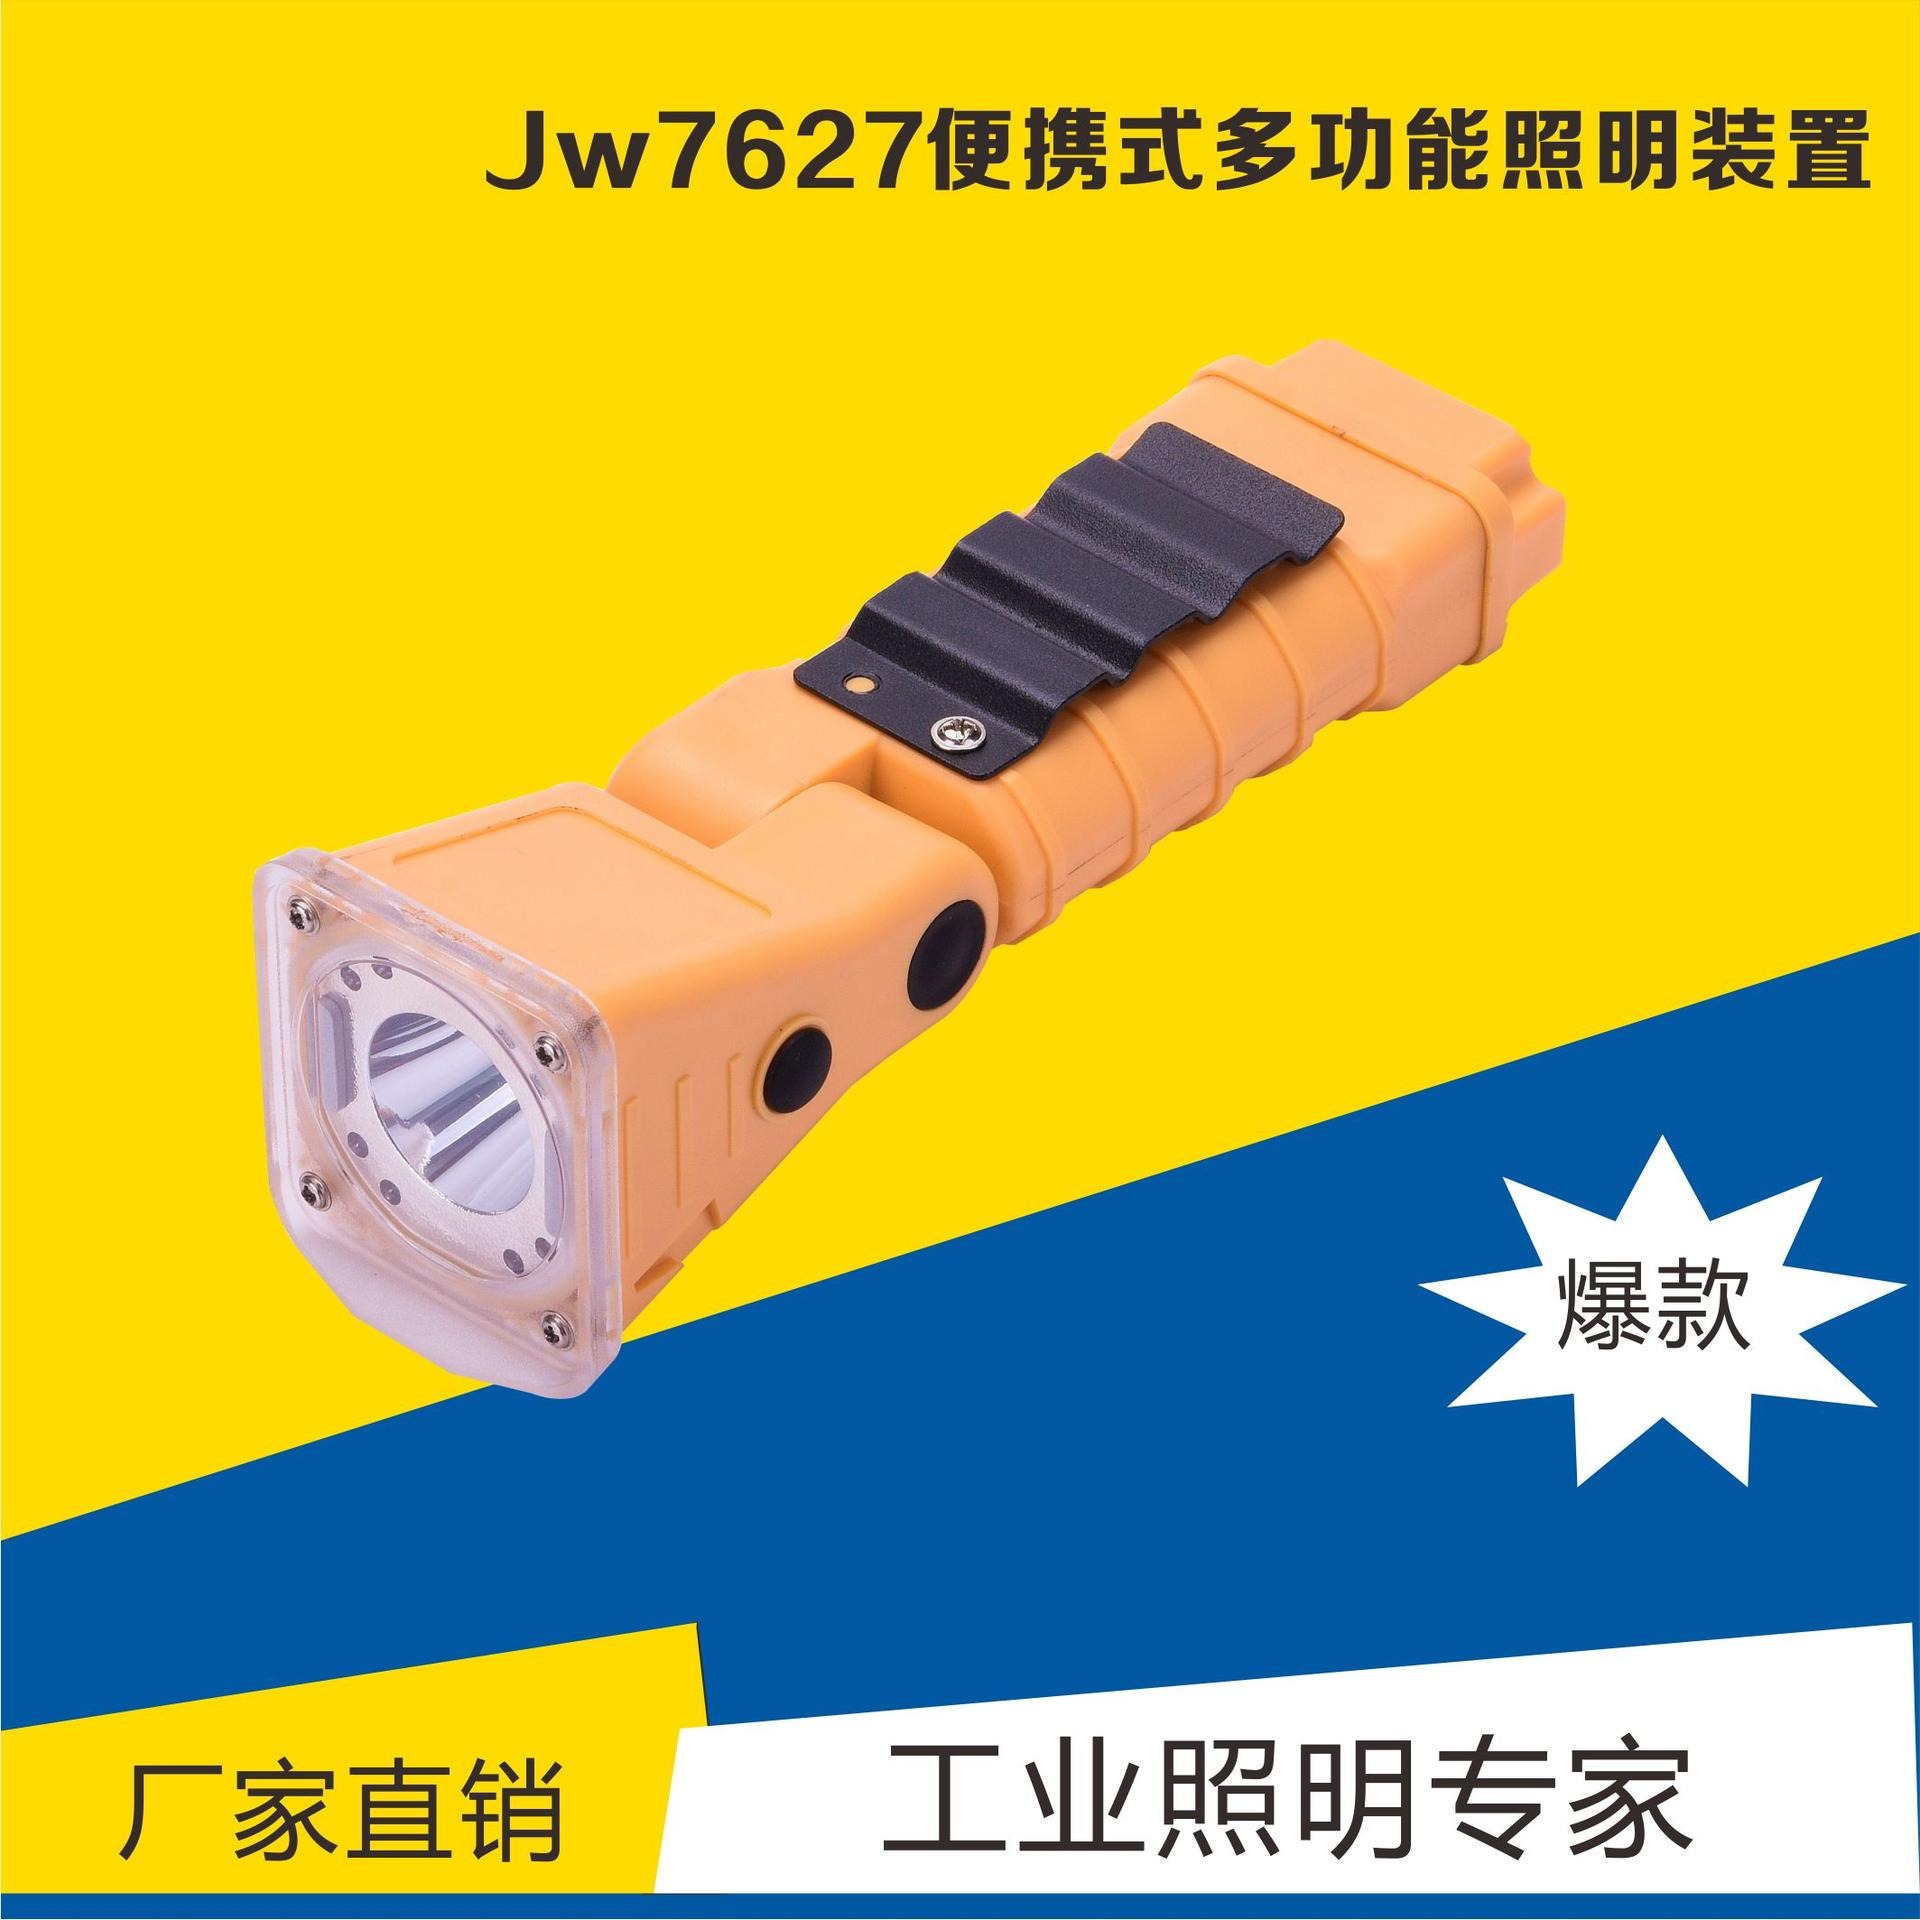 JW7627--LED便携式多功能照明灯 便携式手持腰挂巡检工作灯  户外野外防爆应急手电筒 消防行业巡查巡检搜救灯